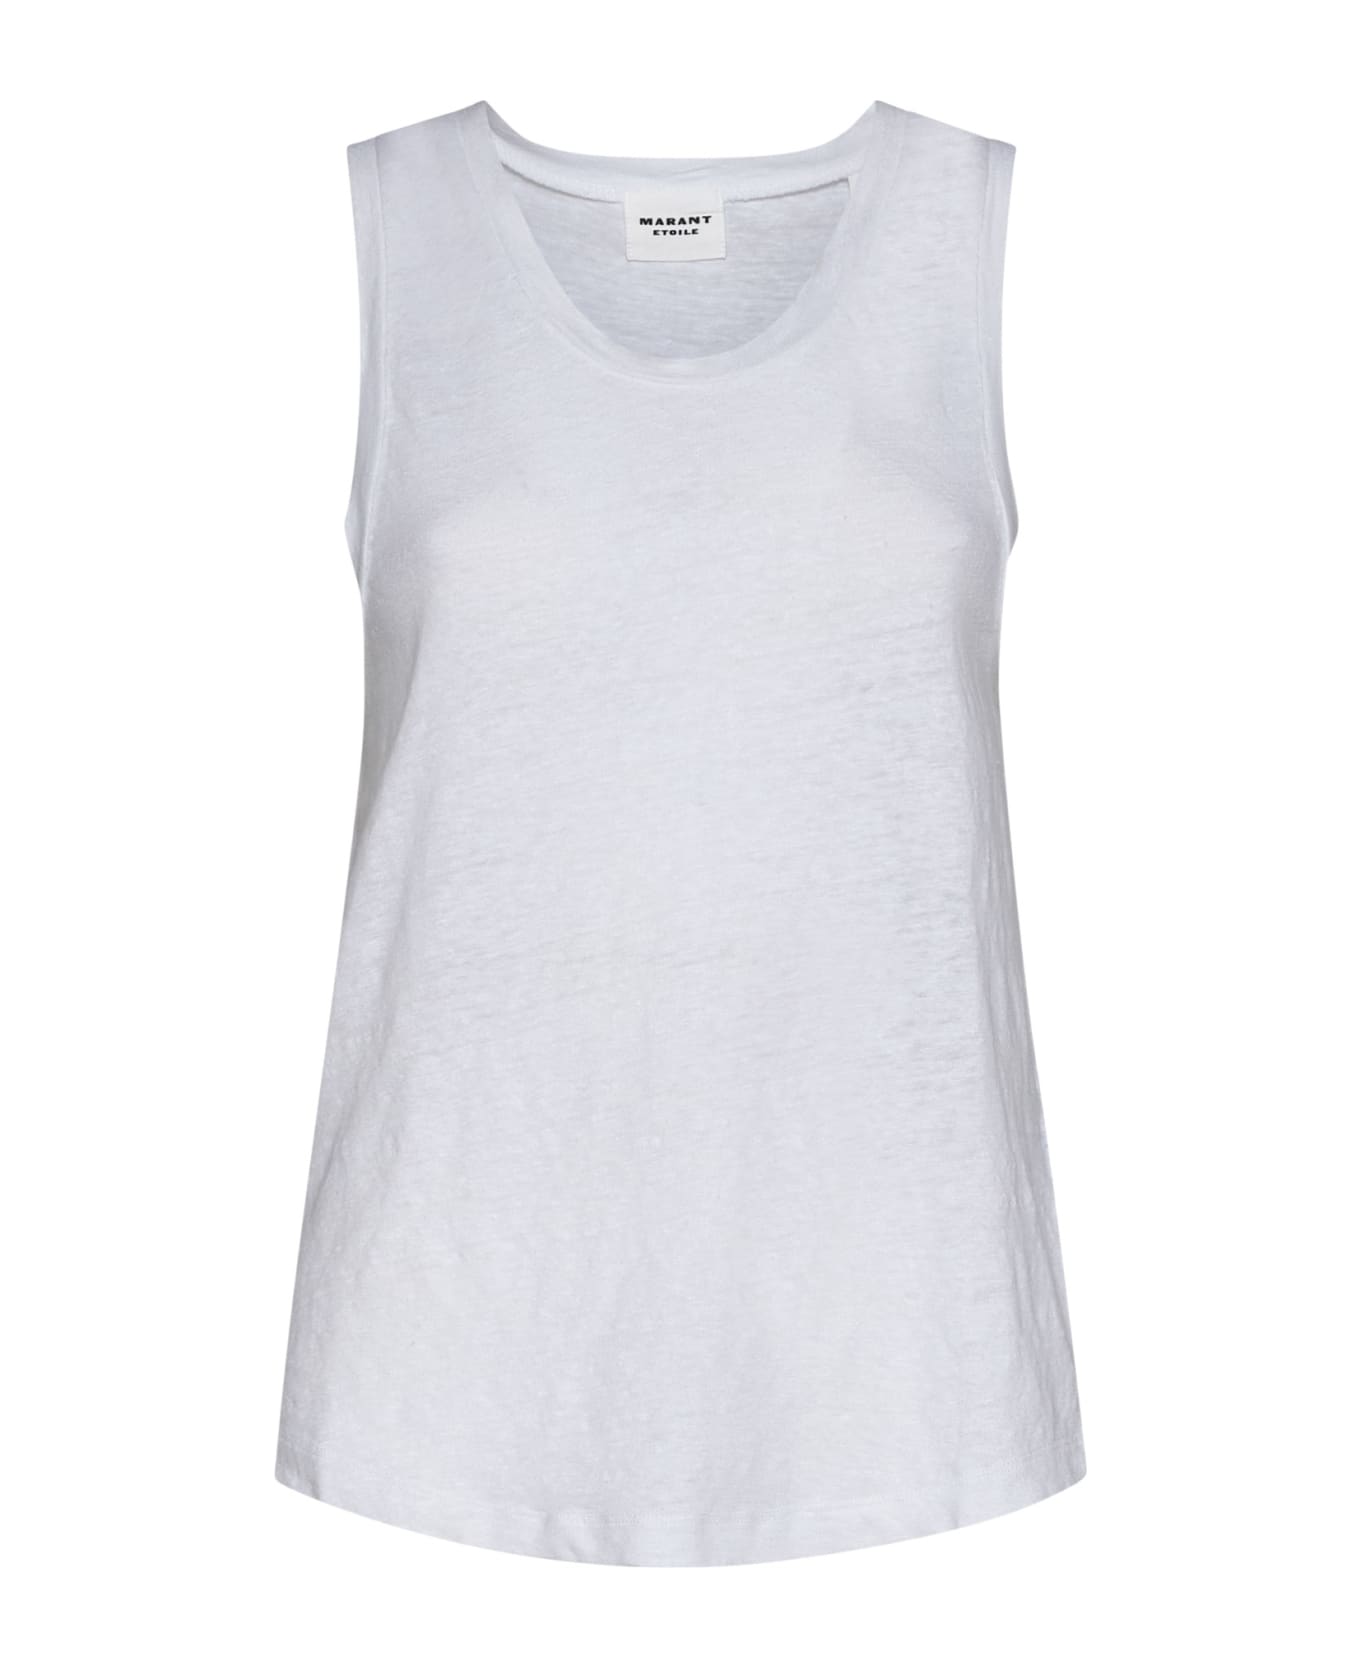 Marant Étoile T-shirt - White タンクトップ